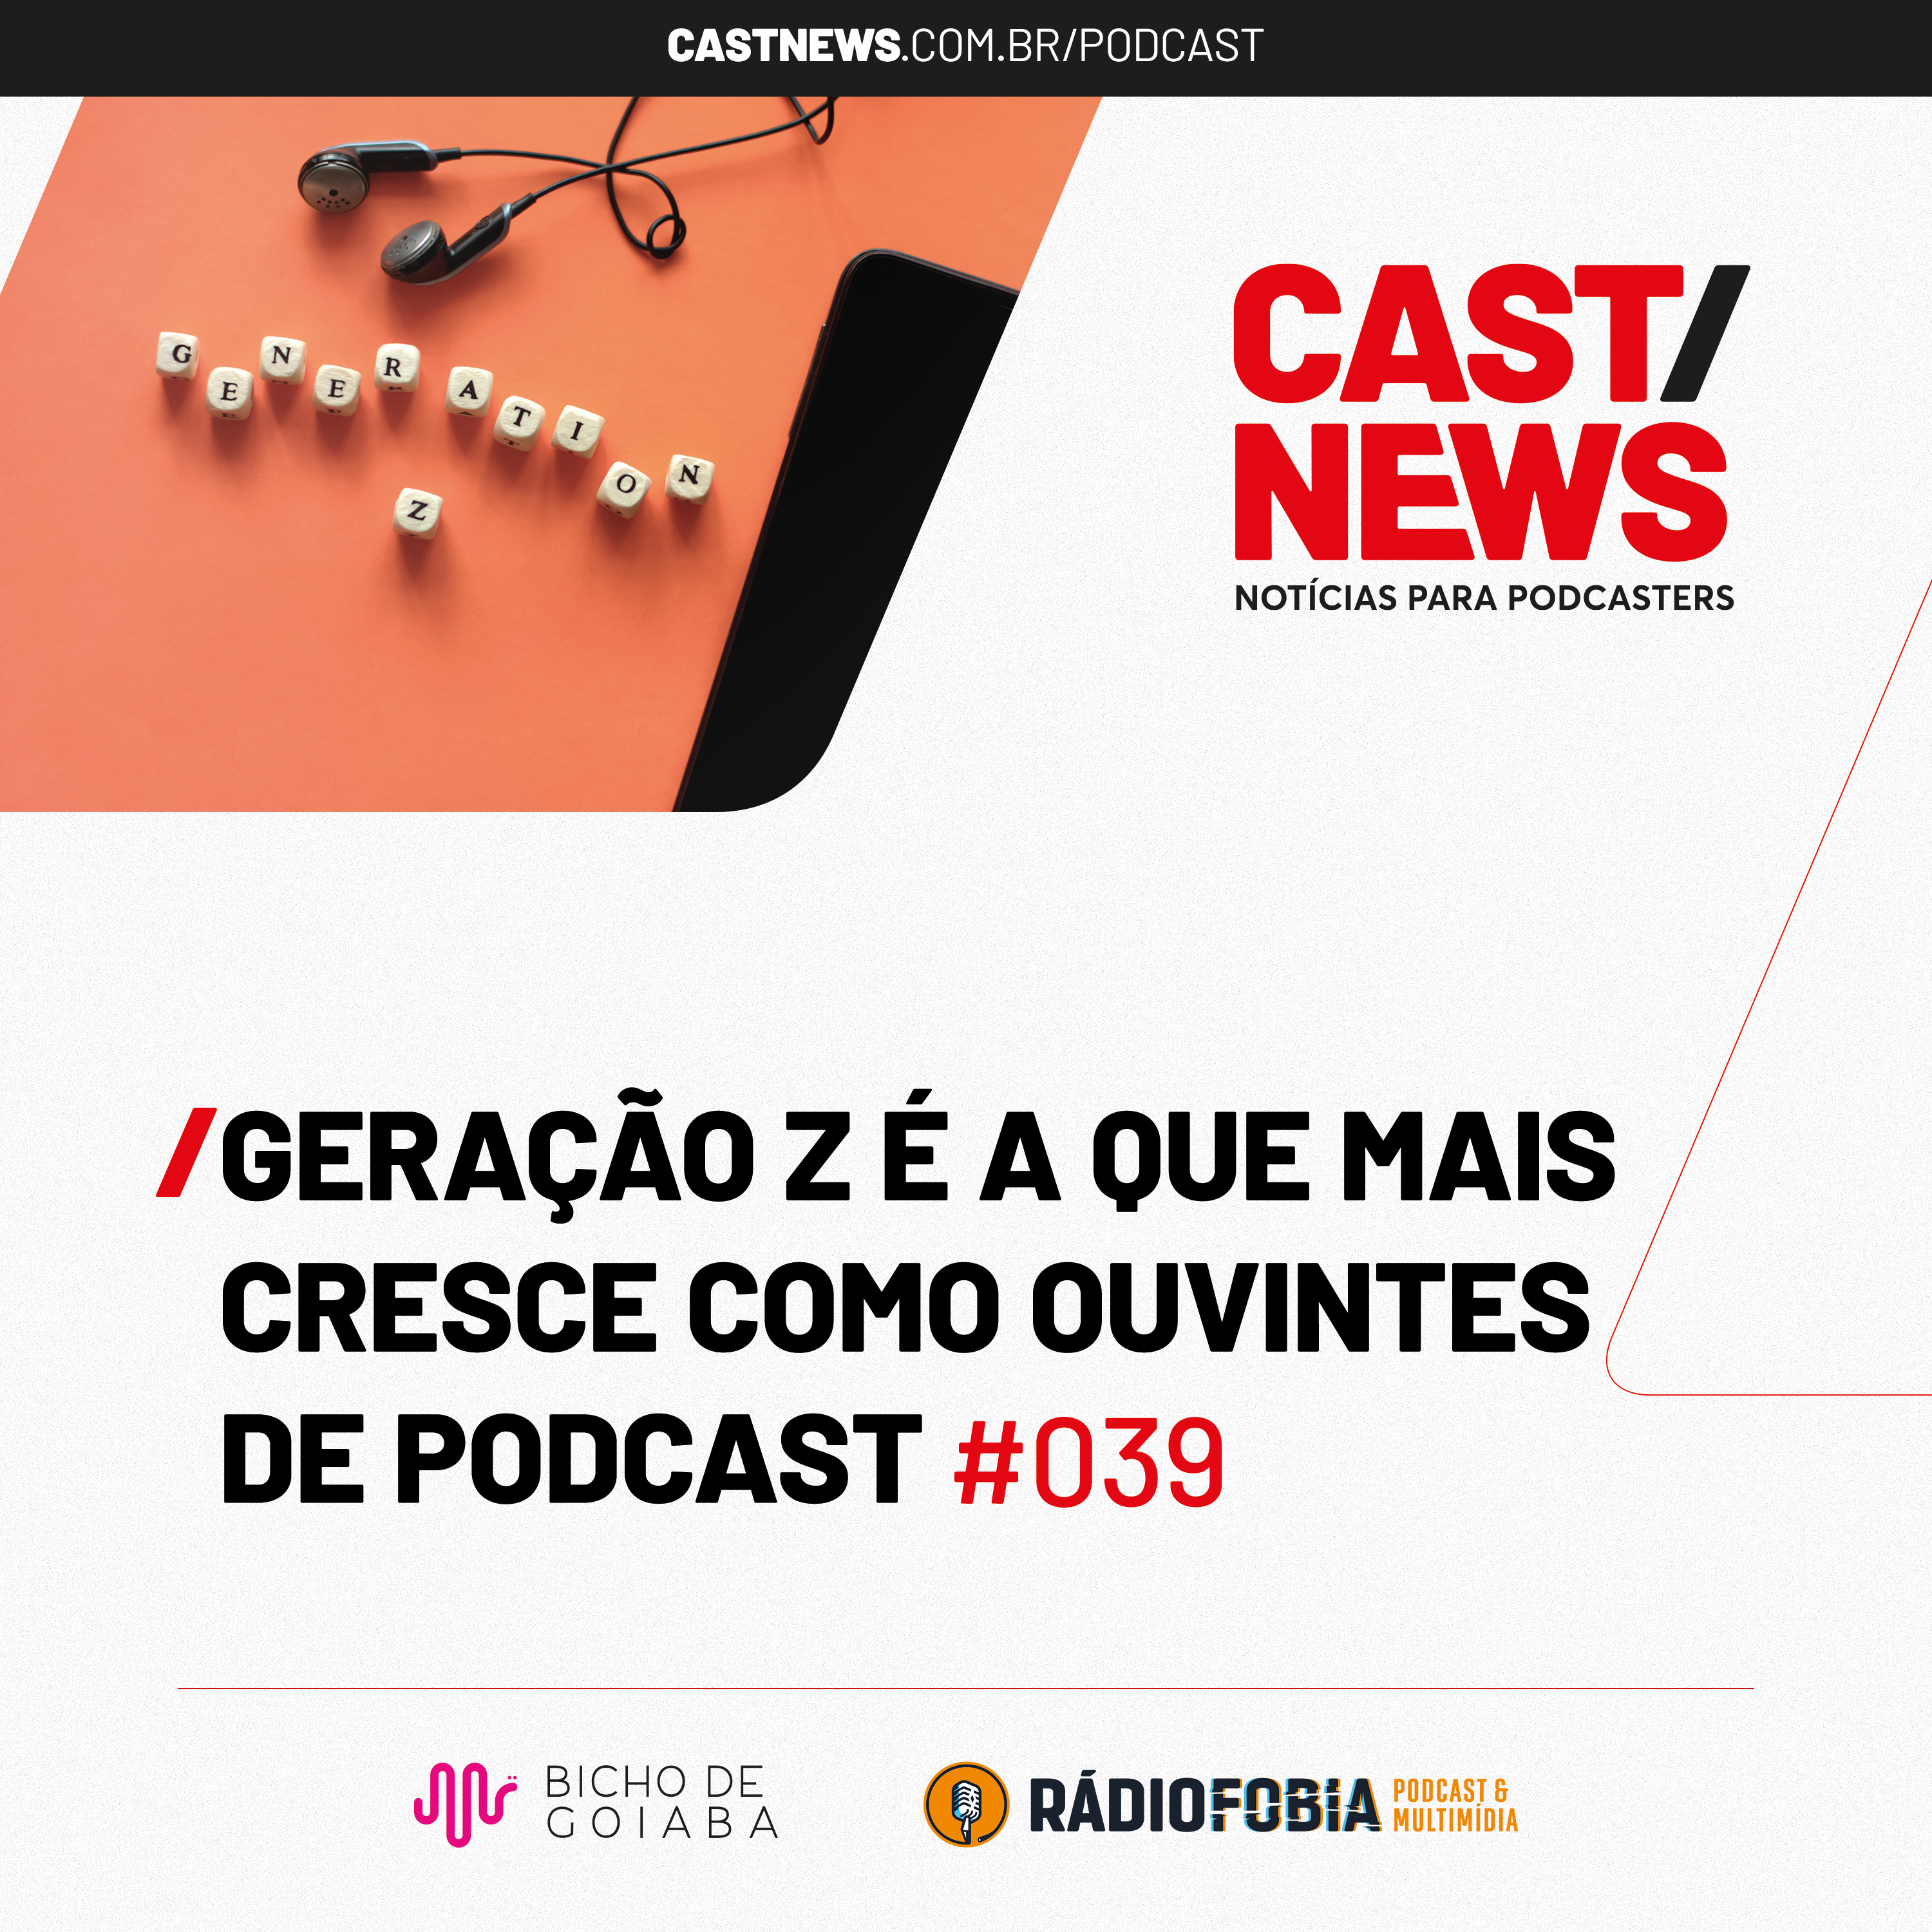 CASTNEWS #039 - Geração Z é a que mais cresce como ouvintes de podcast